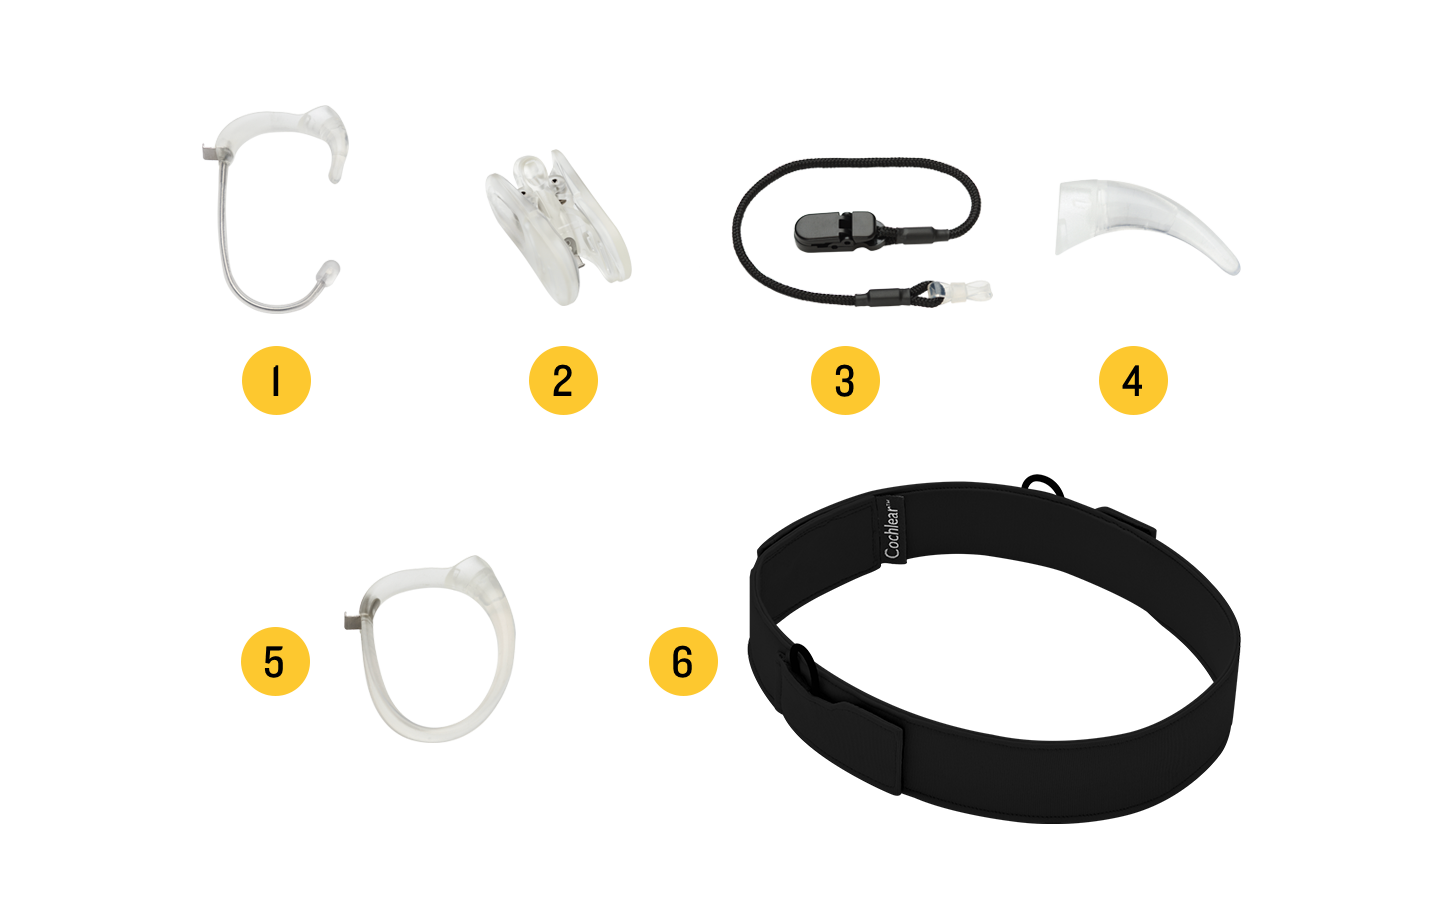 Abbildung des Zubehörs für den Nucleus 7 Soundprozessor: 1. Snugfit, 2. Koala Clip, 3. Sicherheitsschnur, 4. Ohrhaken